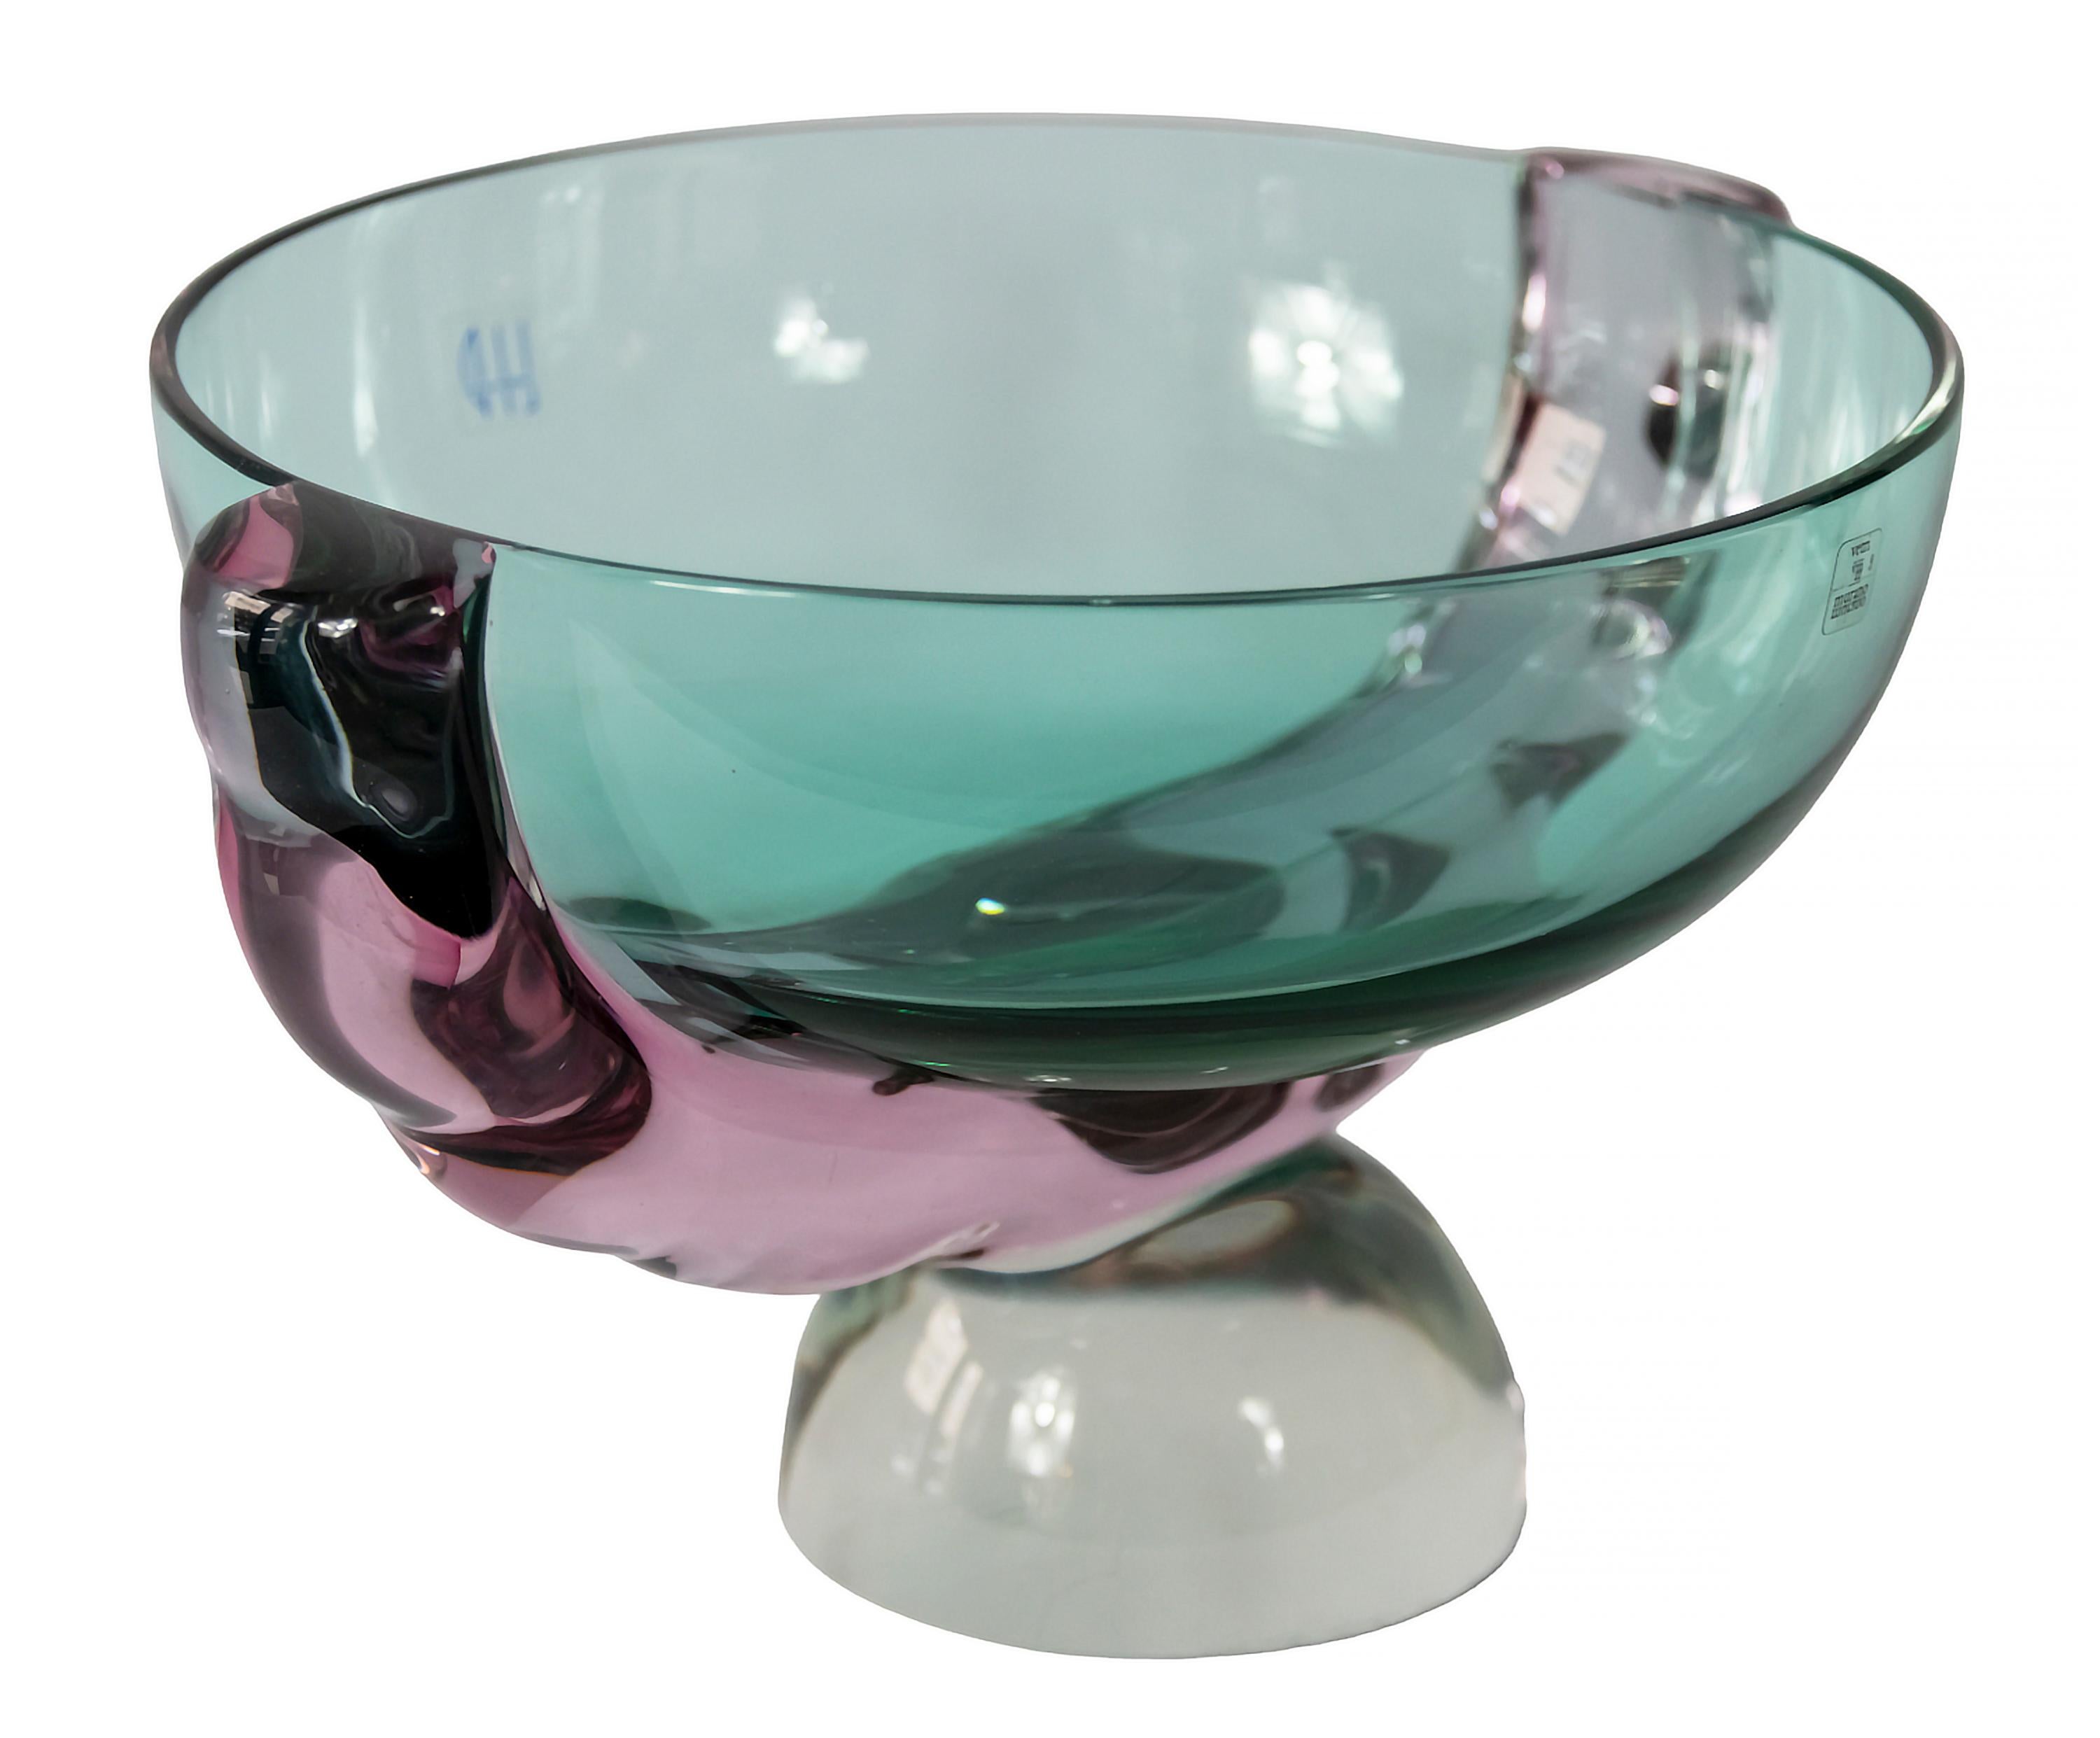 Handgefertigte Vase aus italienischem Murano-Glas, signiert von Marcello Furlan, um 1990.
Die Glasfarben sind hellgrün, smaragdgrün und rosa auf klarem Glasboden. 
Diese Vase ist massiv und sehr schwer.